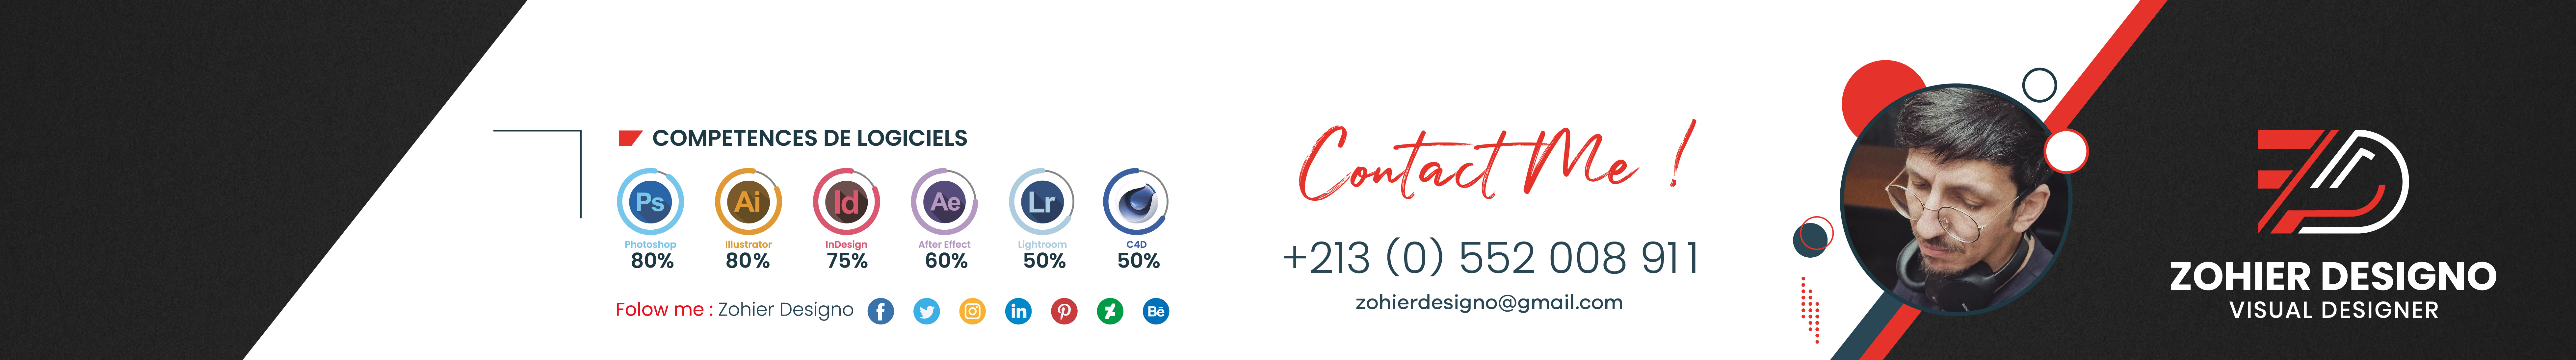 Profil-Banner von Zohier Designo